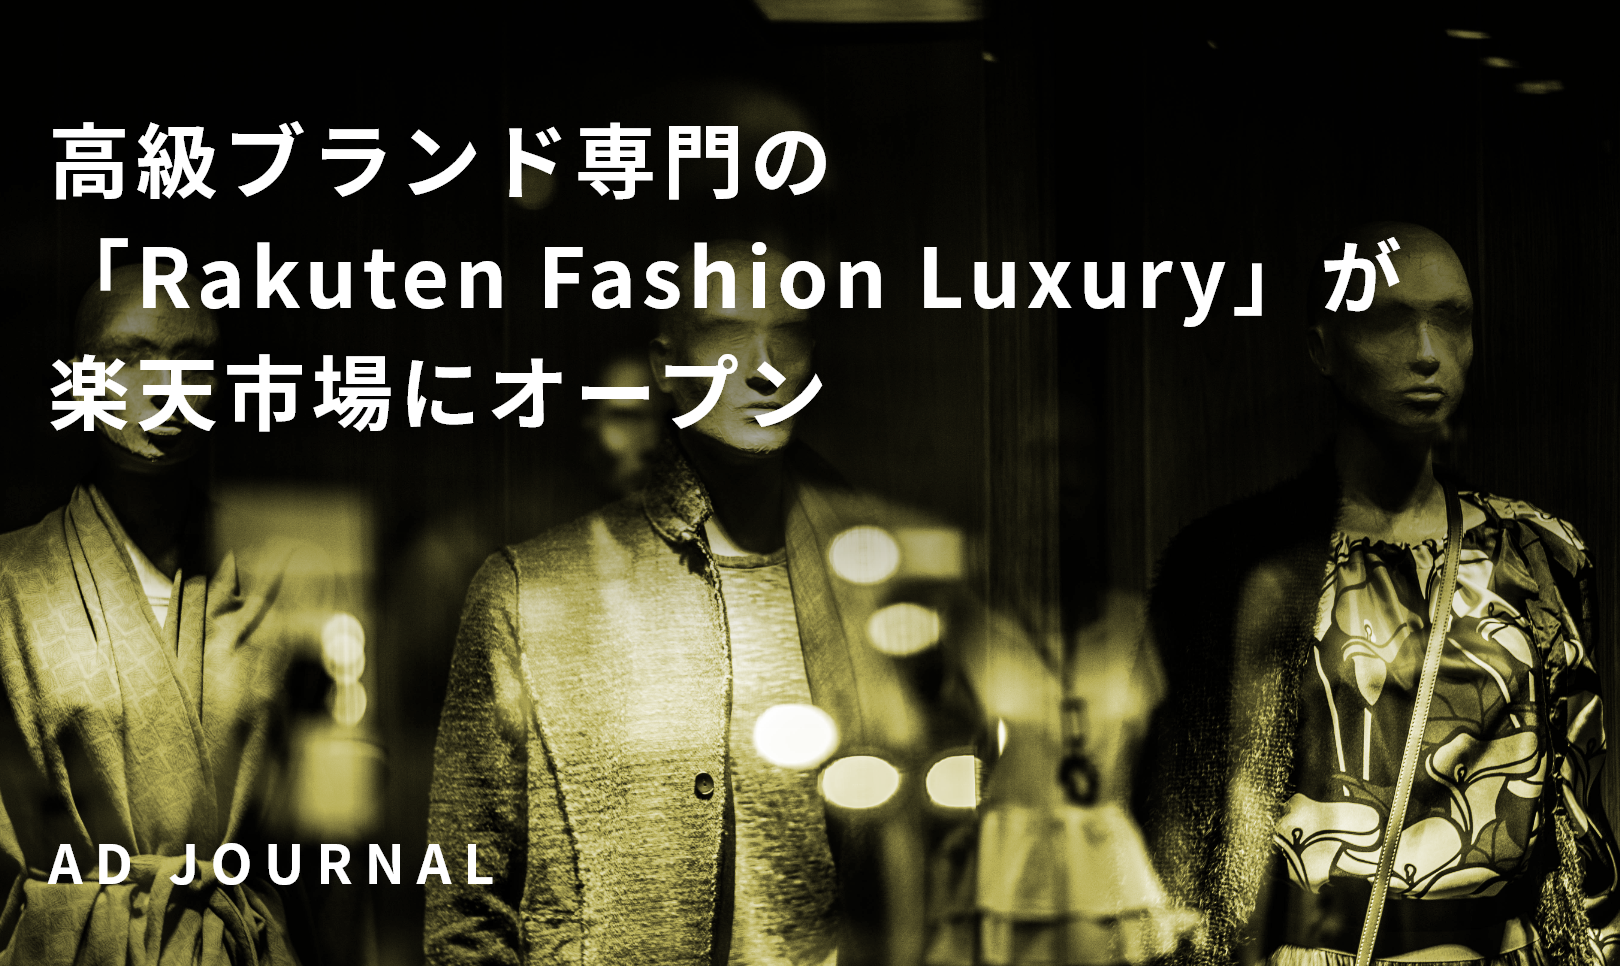 高級ブランド専門の「Rakuten Fashion Luxury」が楽天市場にオープン